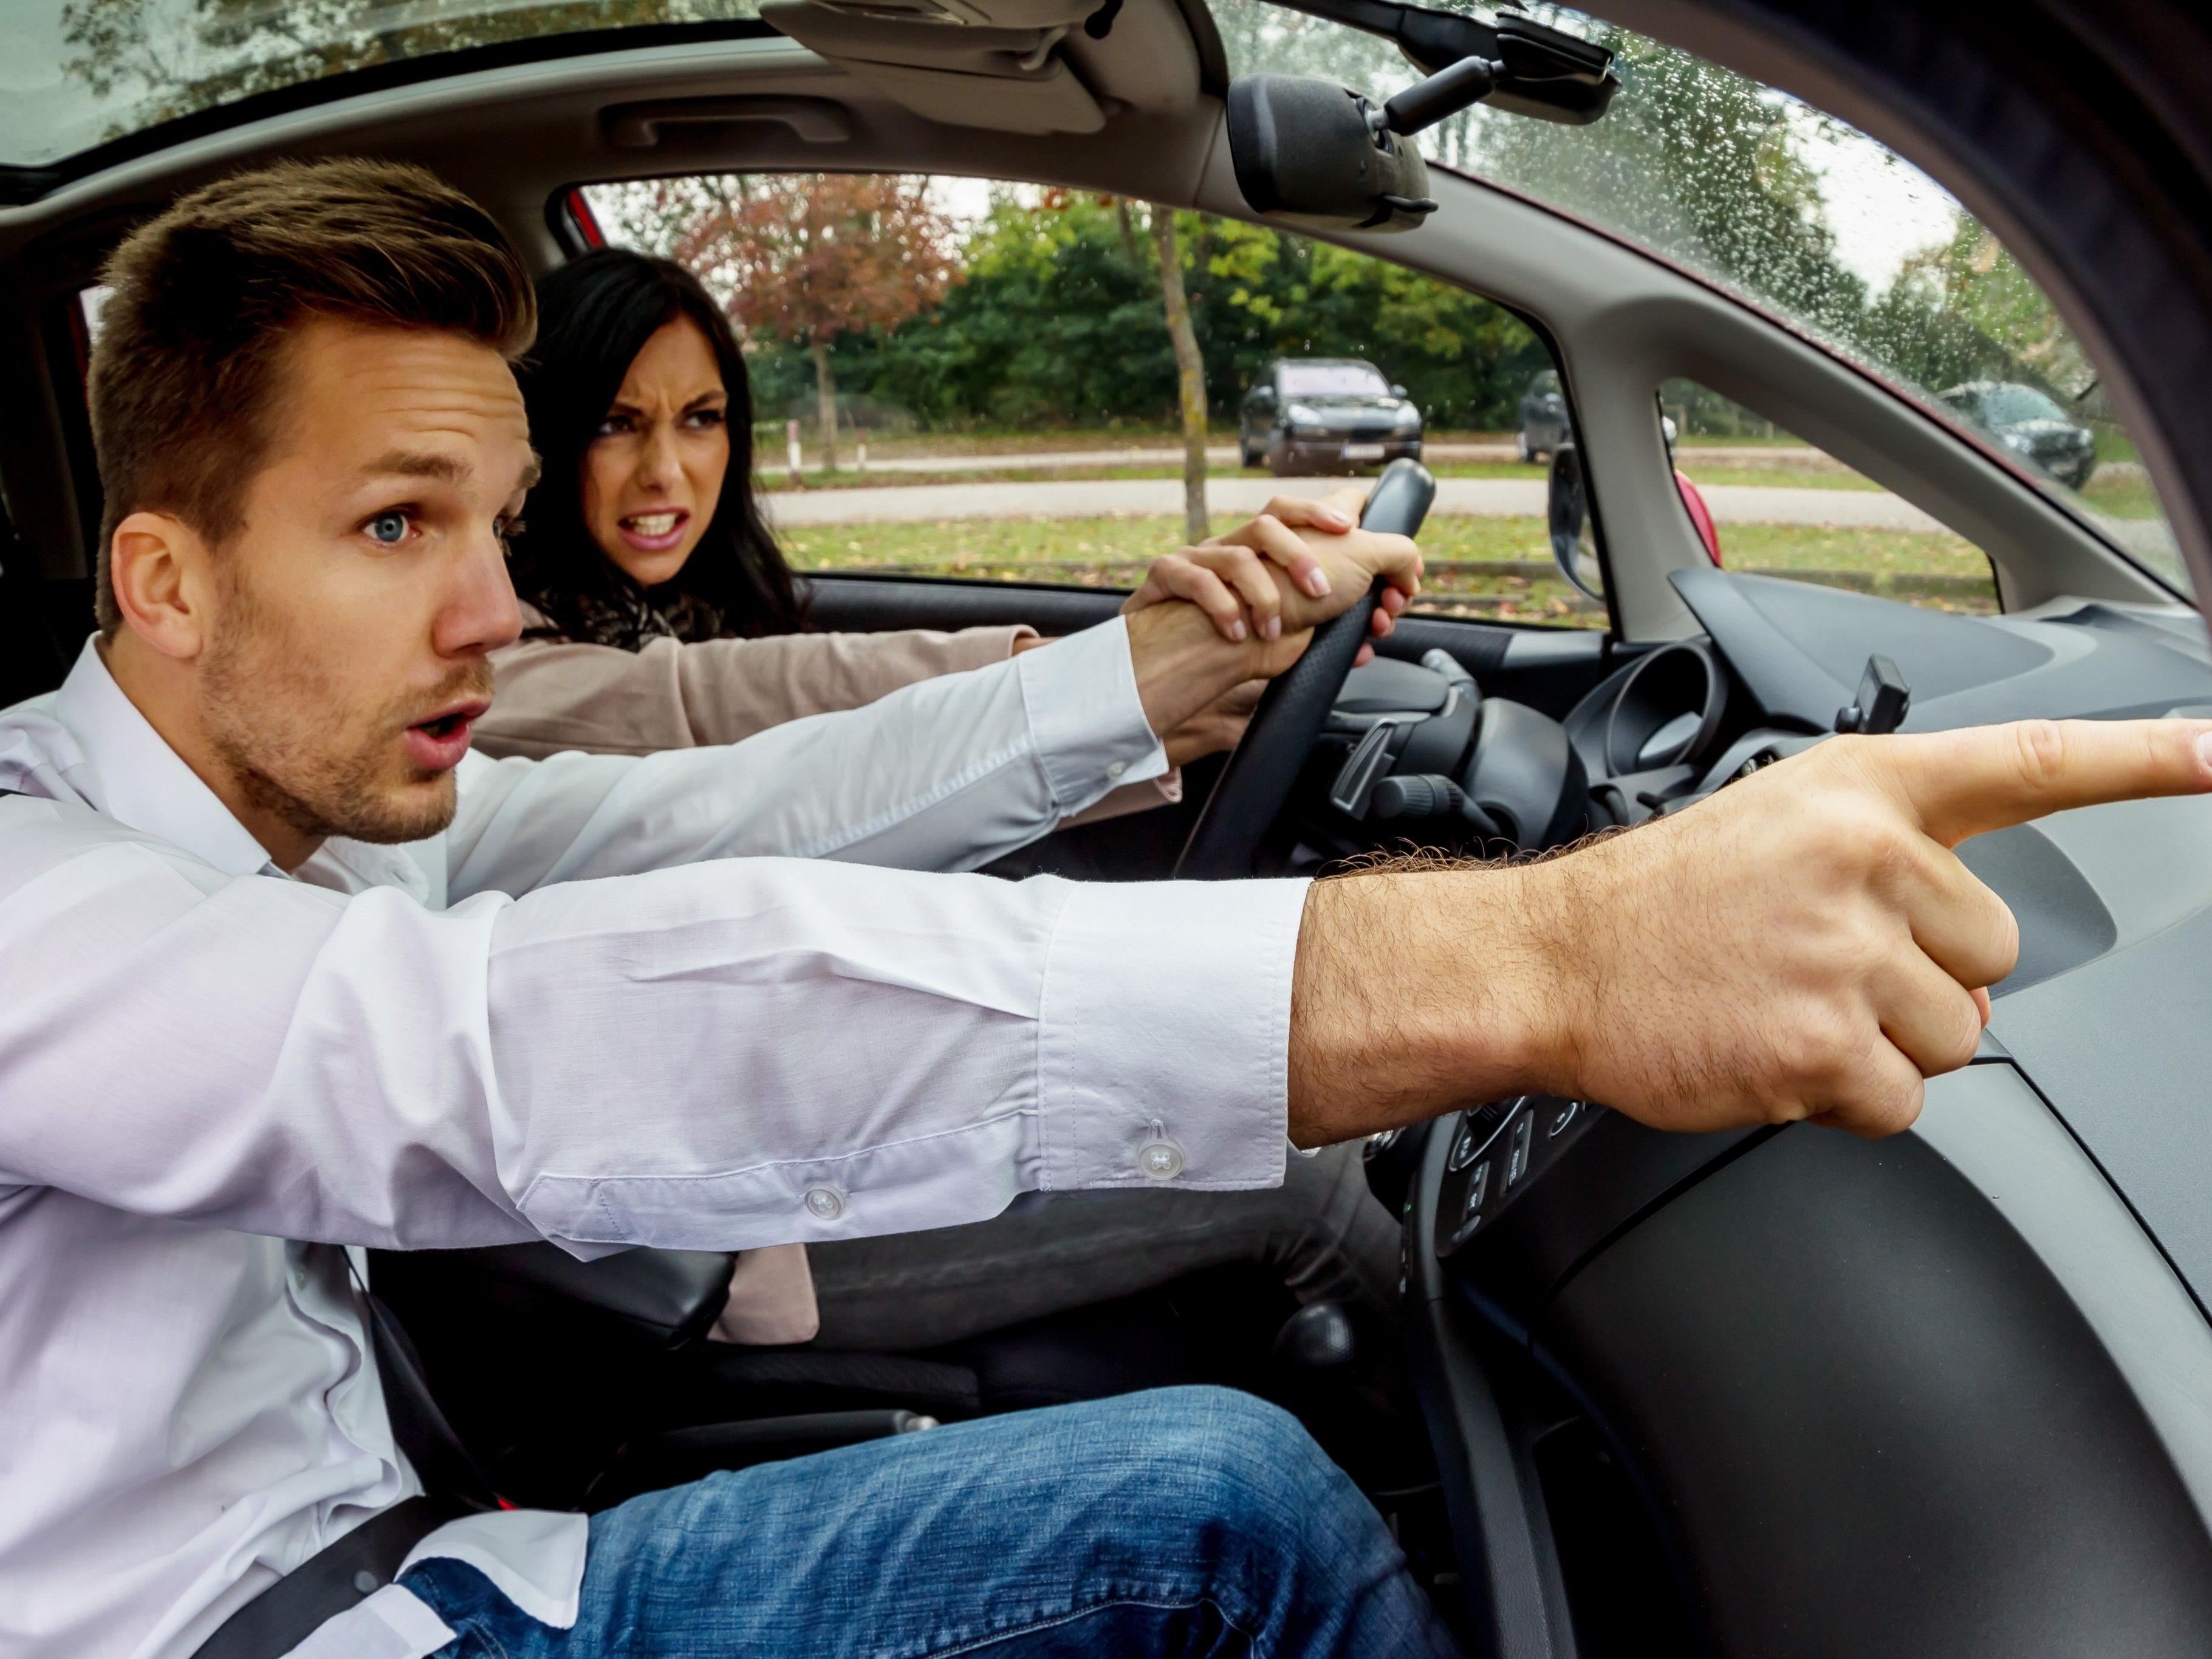 Autofahren ist aber selbst bei größter Routine immer Risikoverhalten und keine Nebentätigkeit.